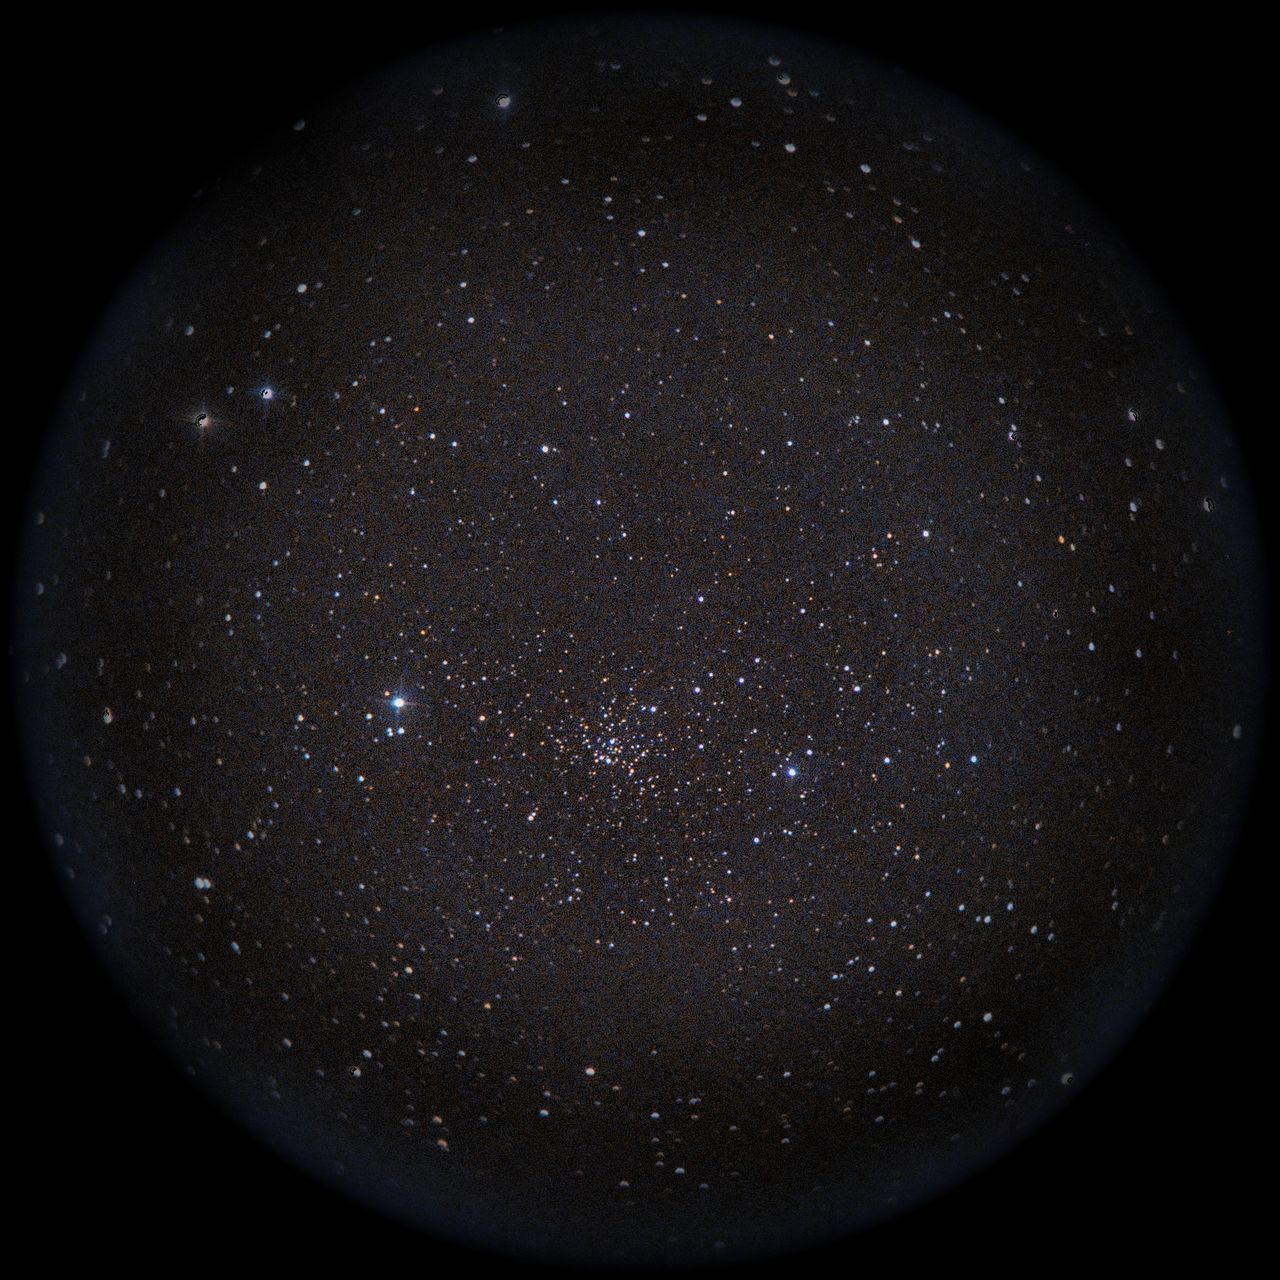 Image of NGC559